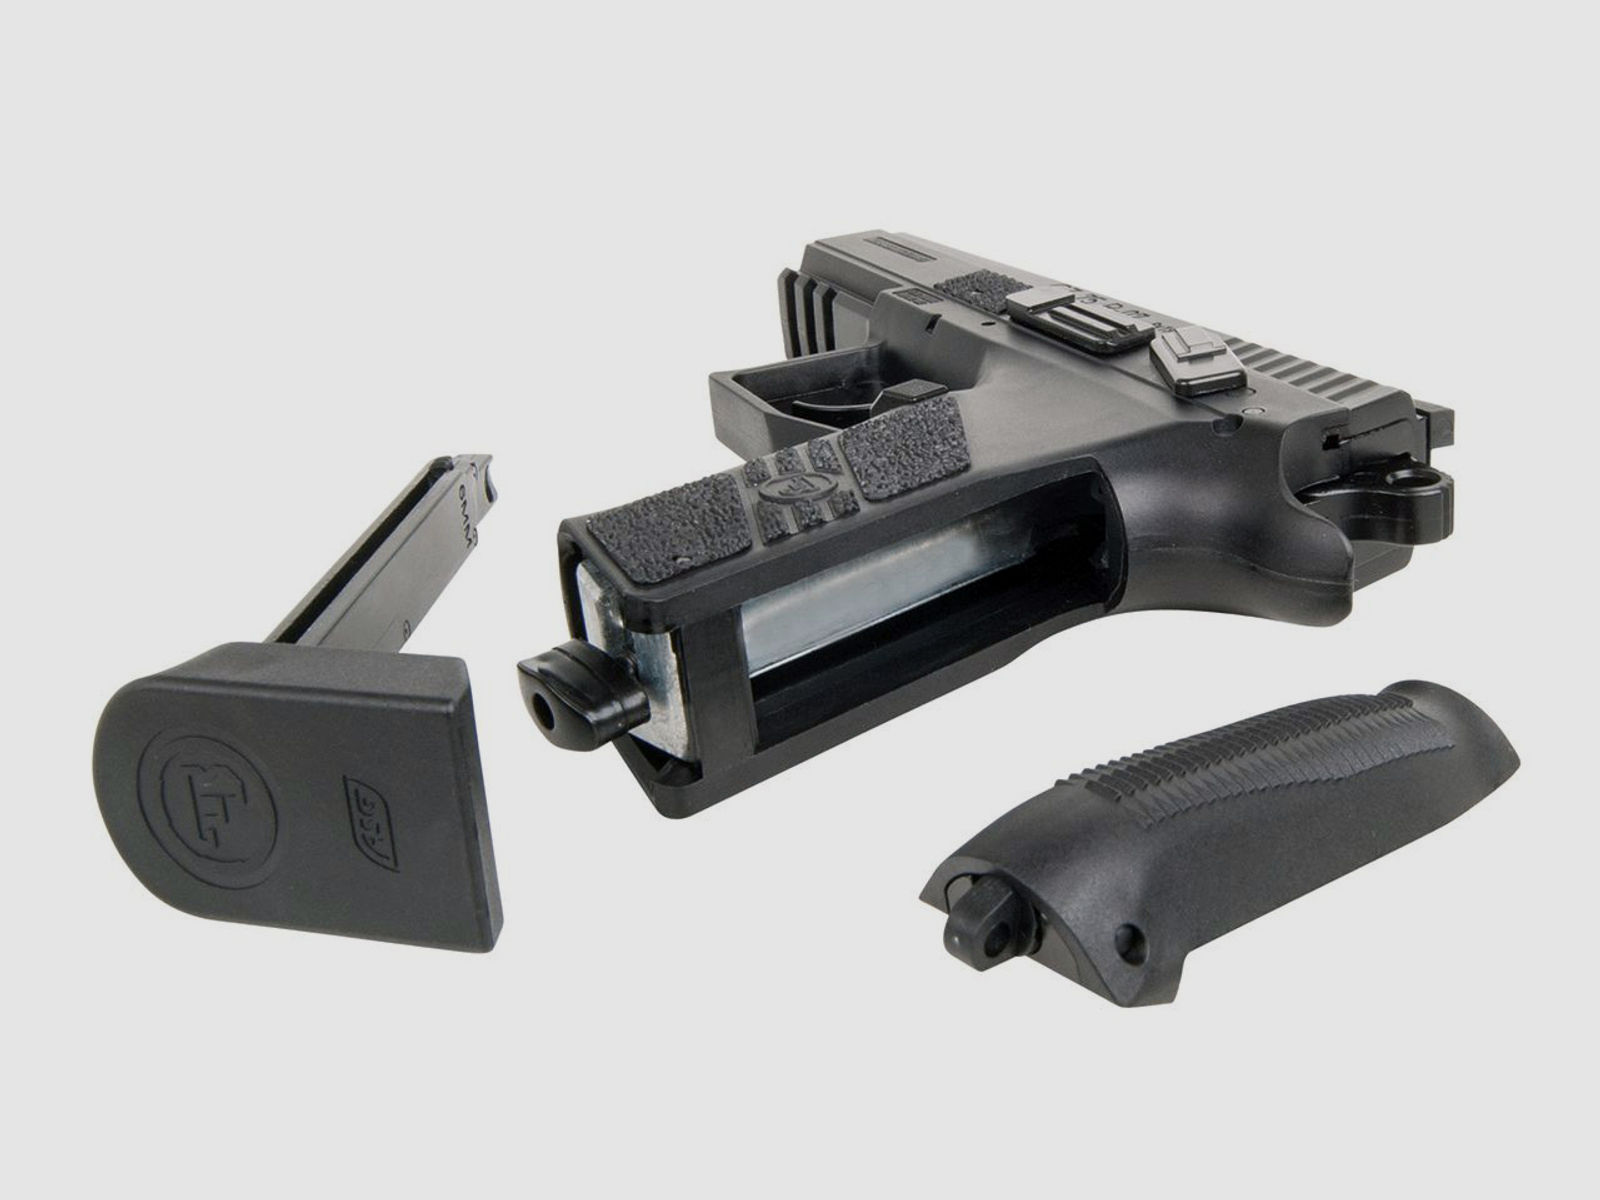 CO2 Softairpistole CZ 75 P-07 Duty Blow Back Metallschlitten schwarz Kaliber 6 mm BB (P18)+ schwarzer SchalldĂ¤mpfer Adapter